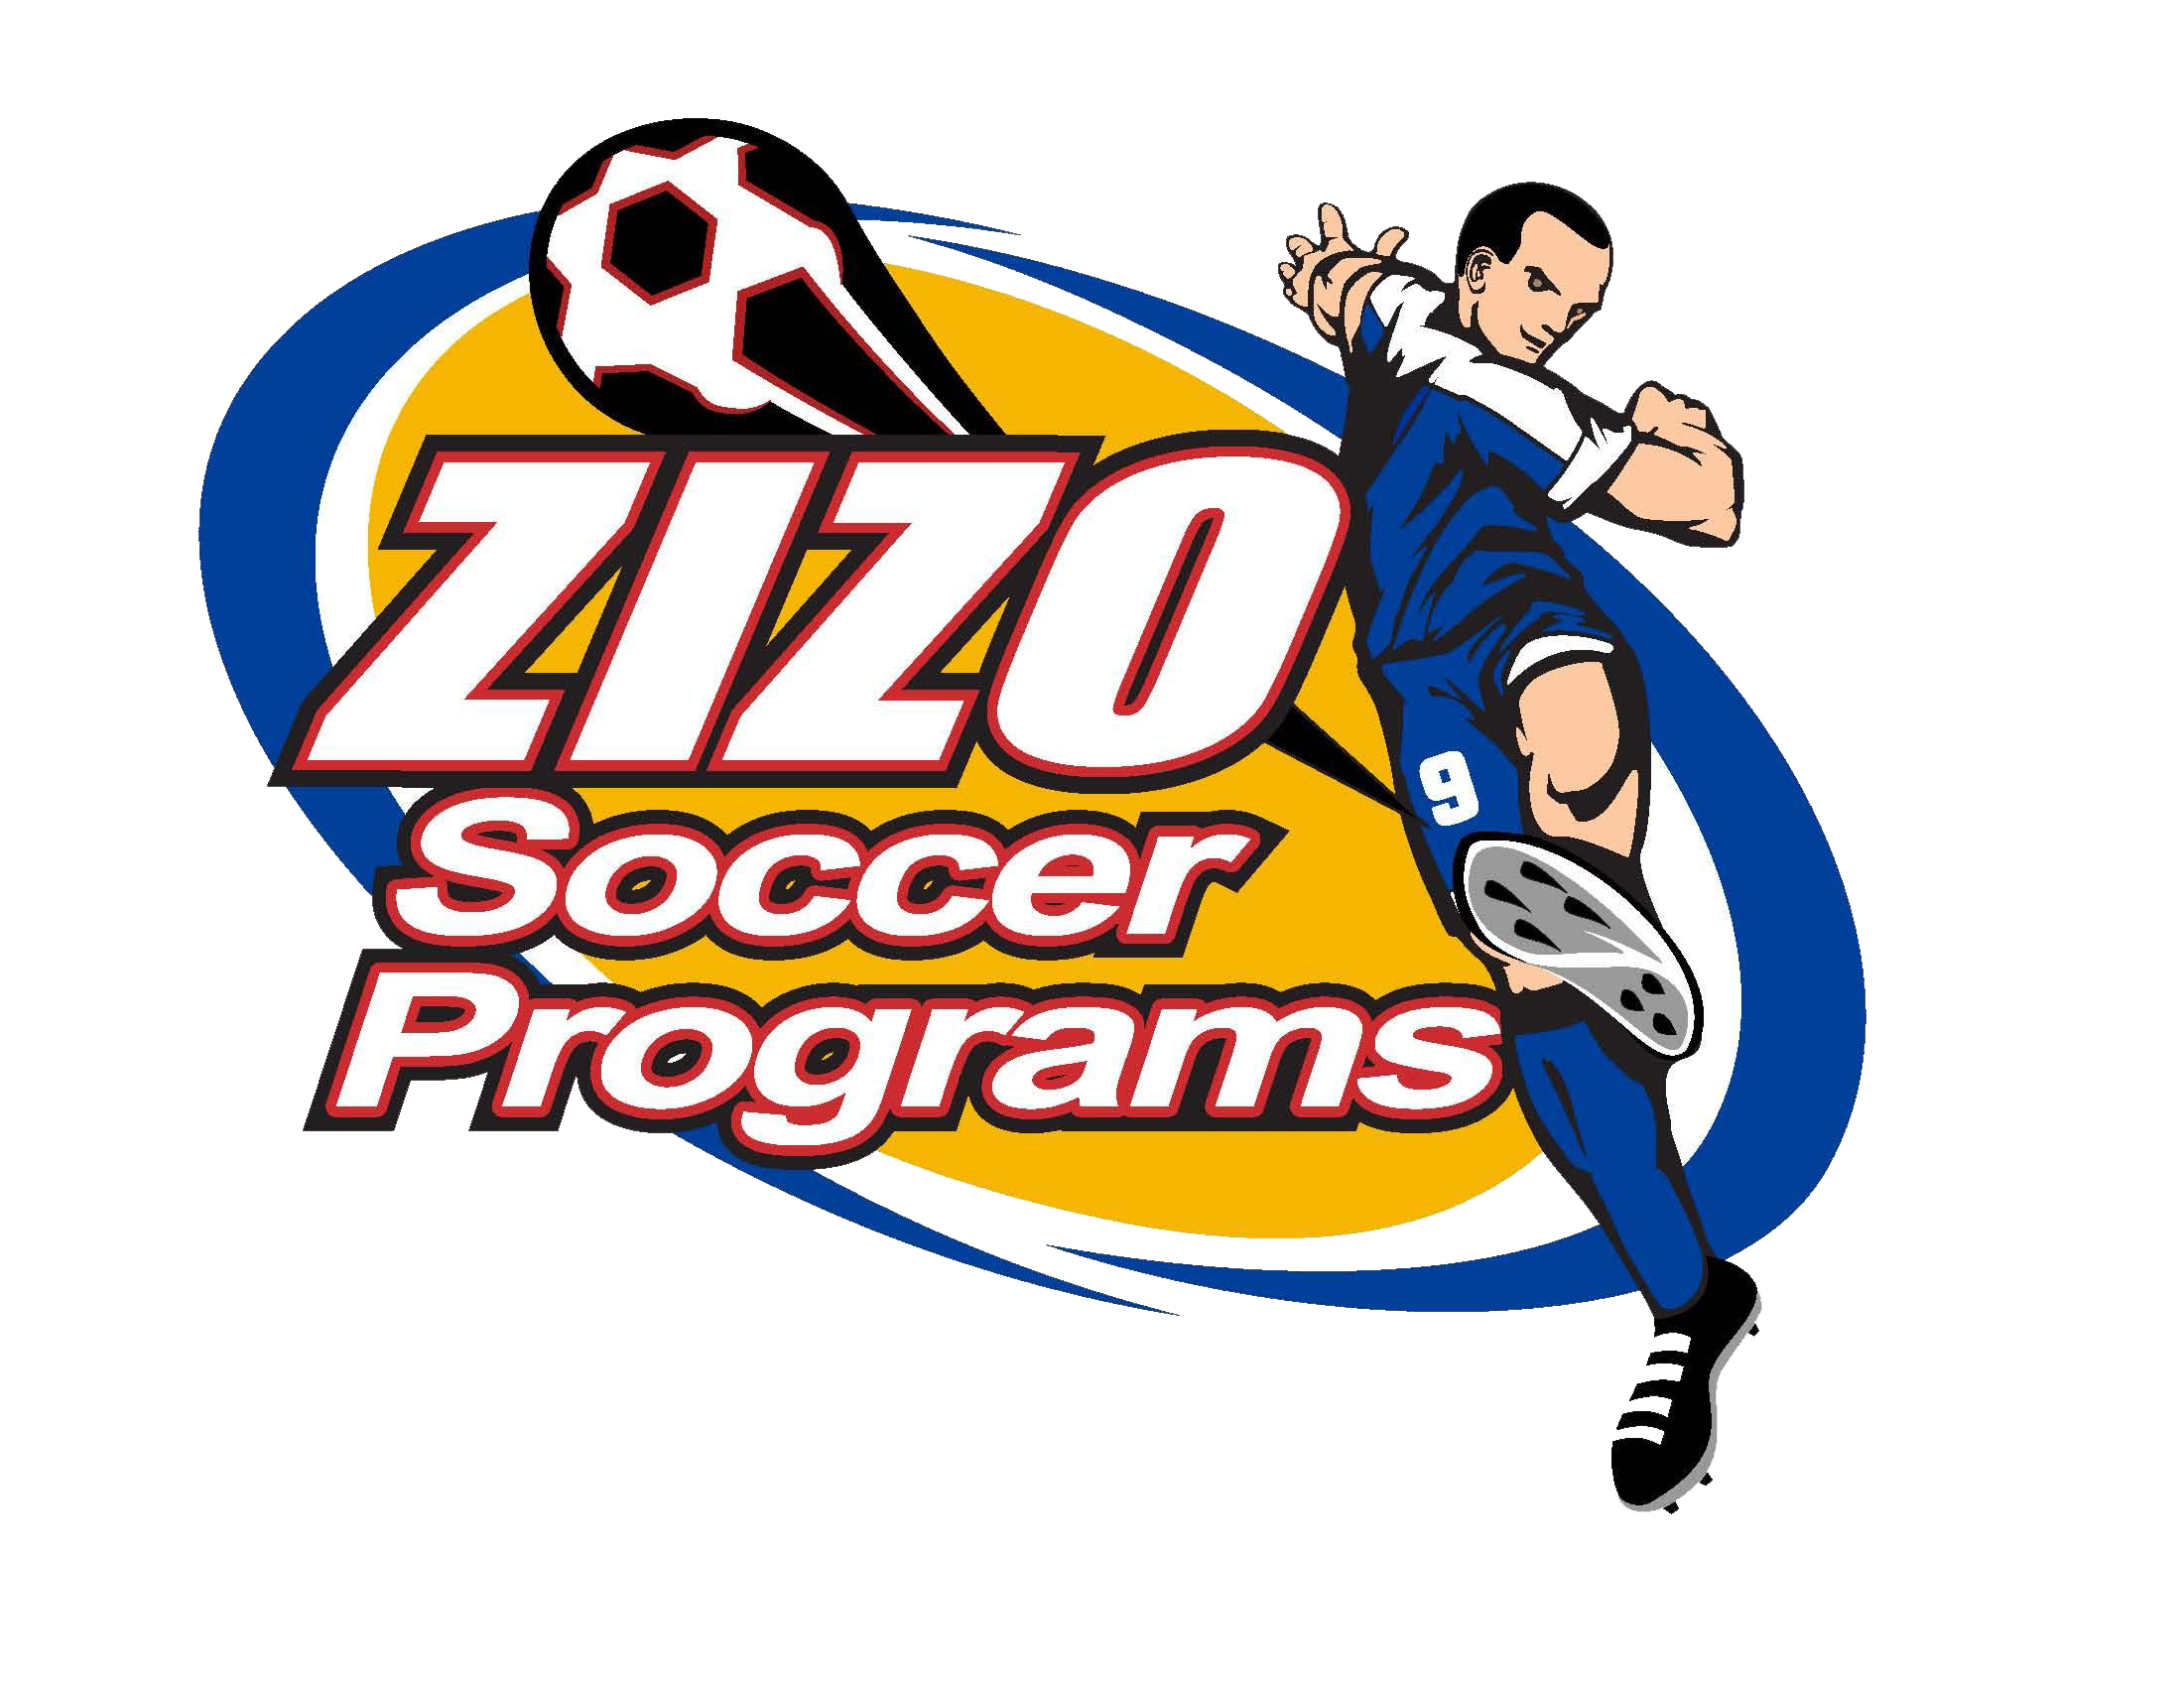 ZIZO Soccer